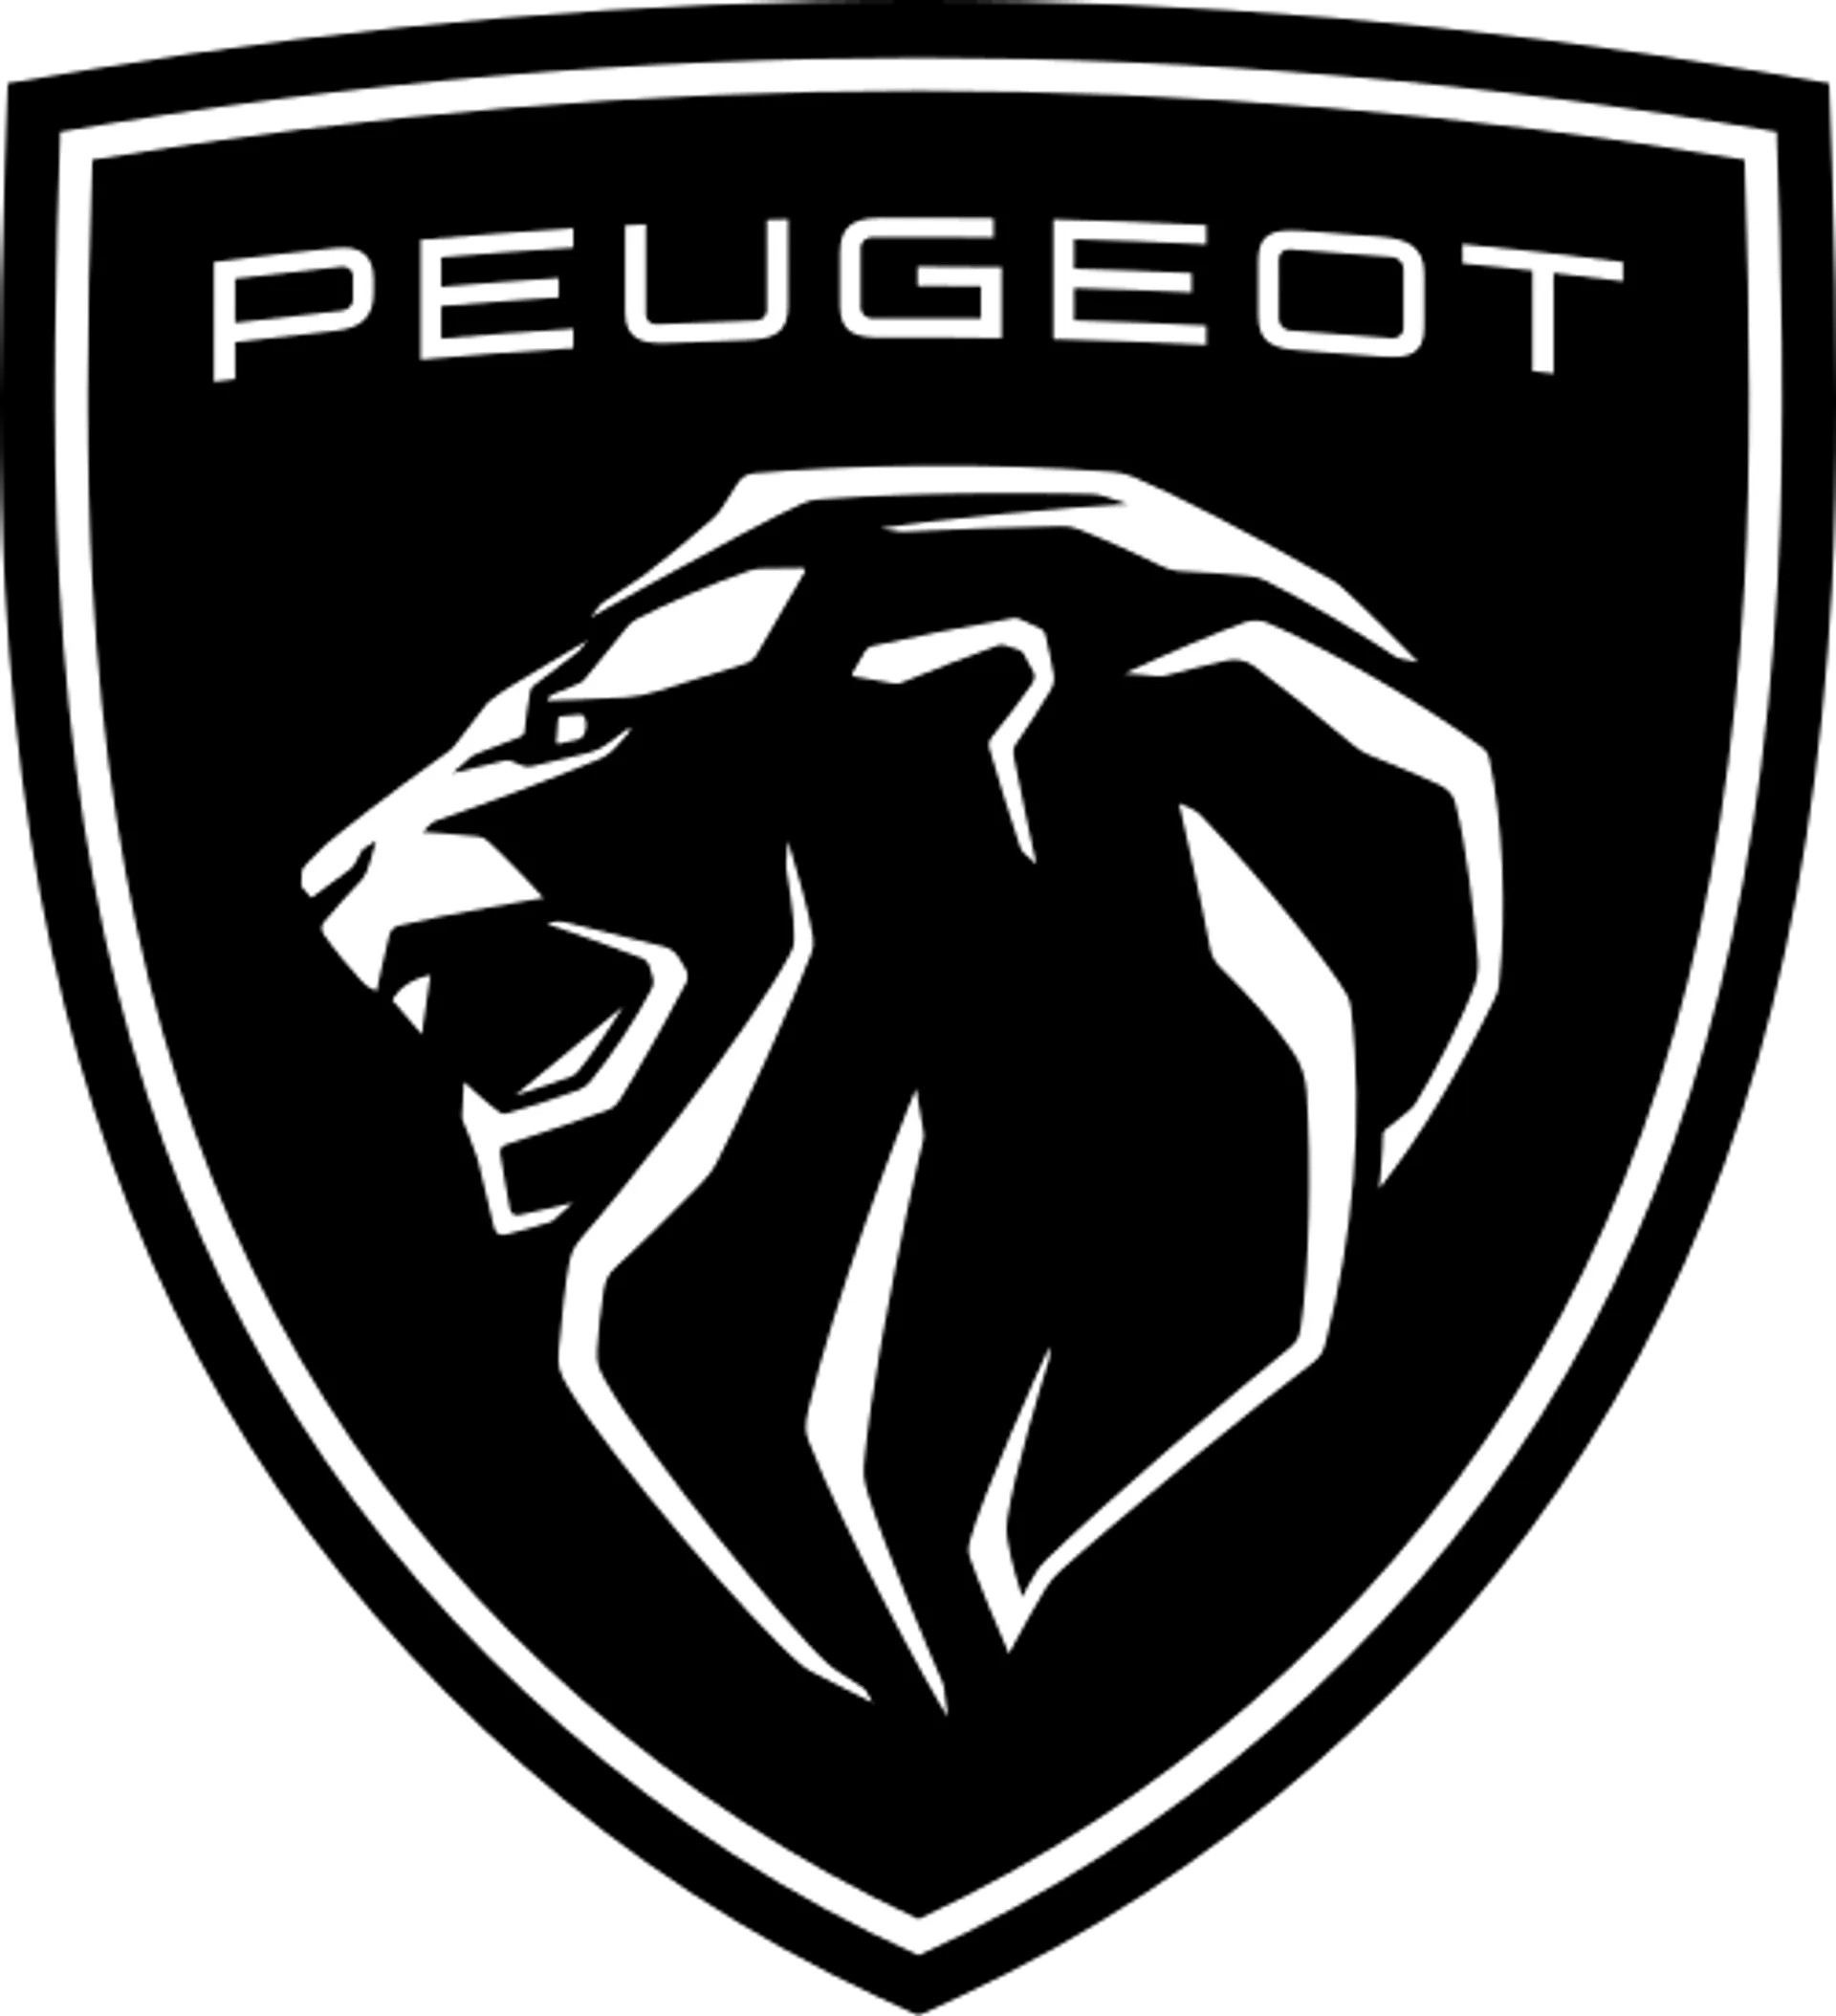 PEUGEOT logo de folhetos